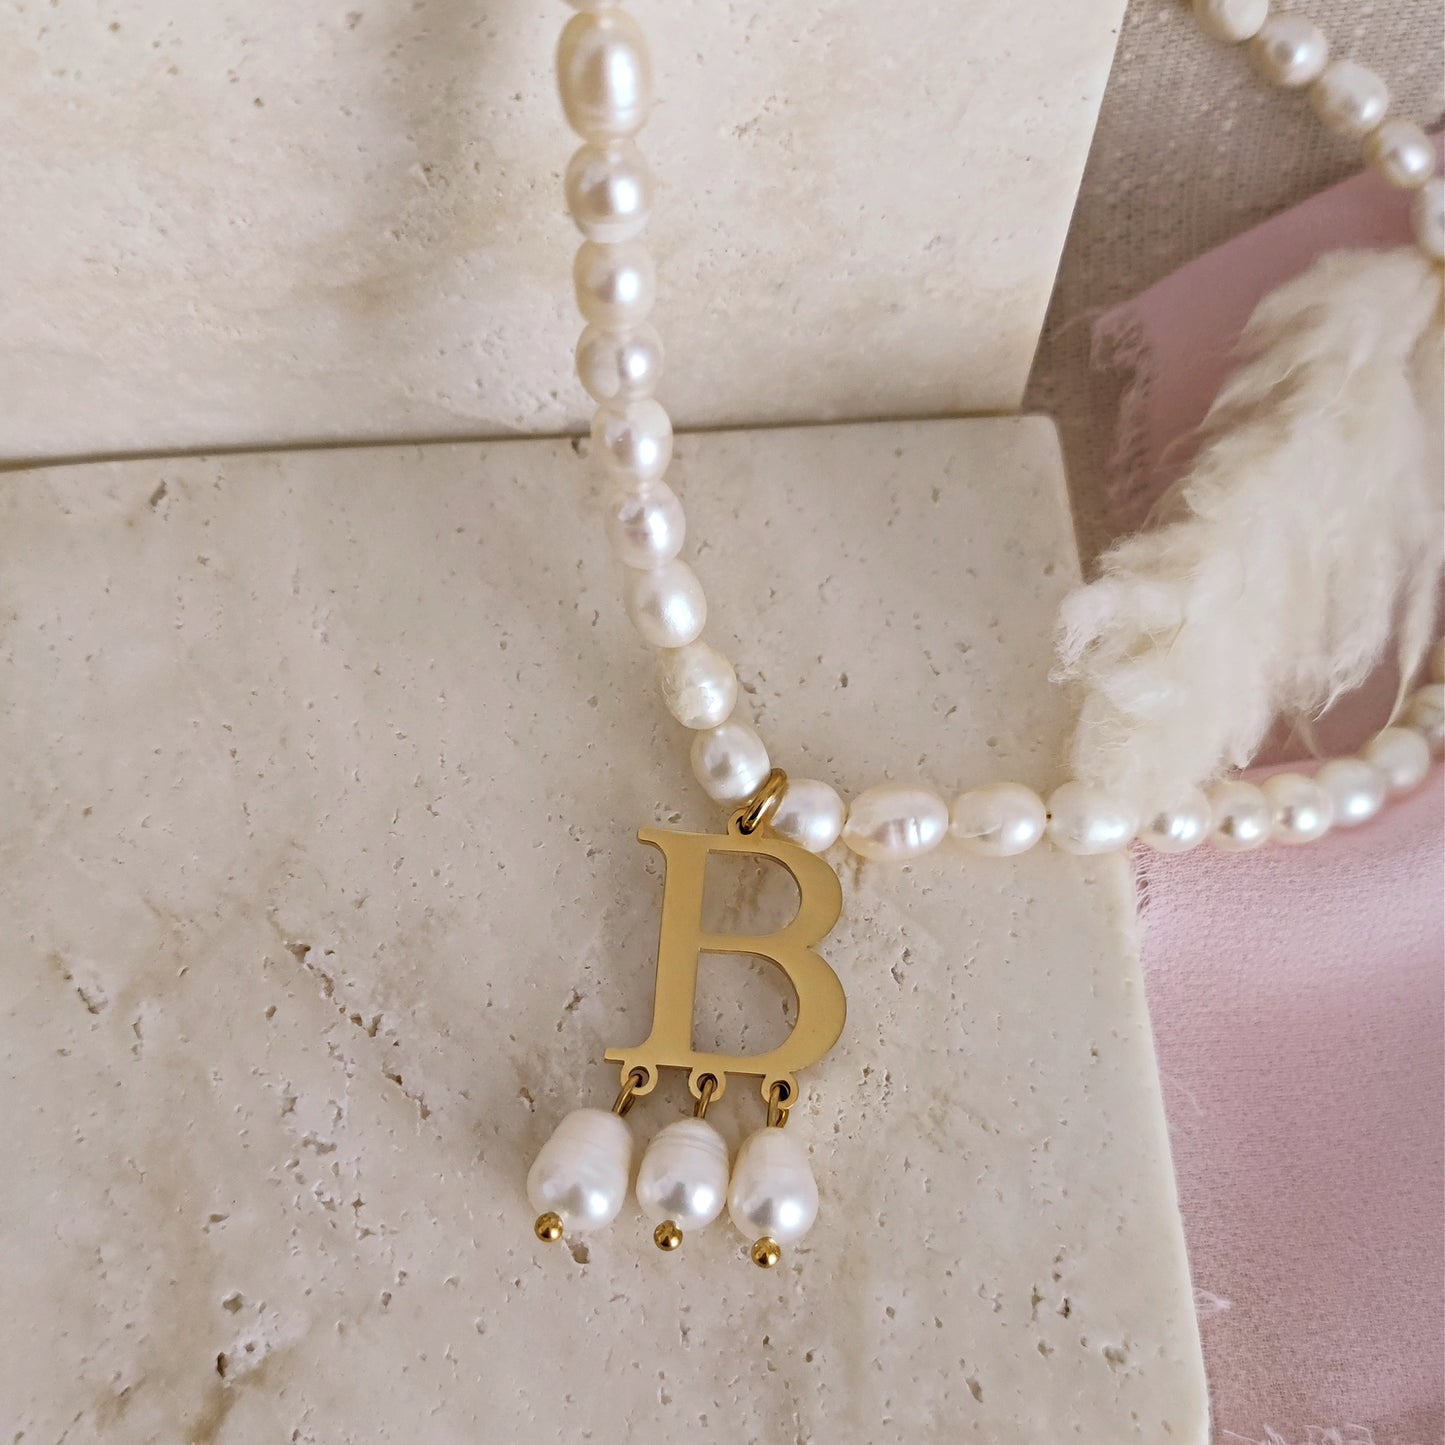 Collana Anne Boleyn con perle di fiume e lettera "B"